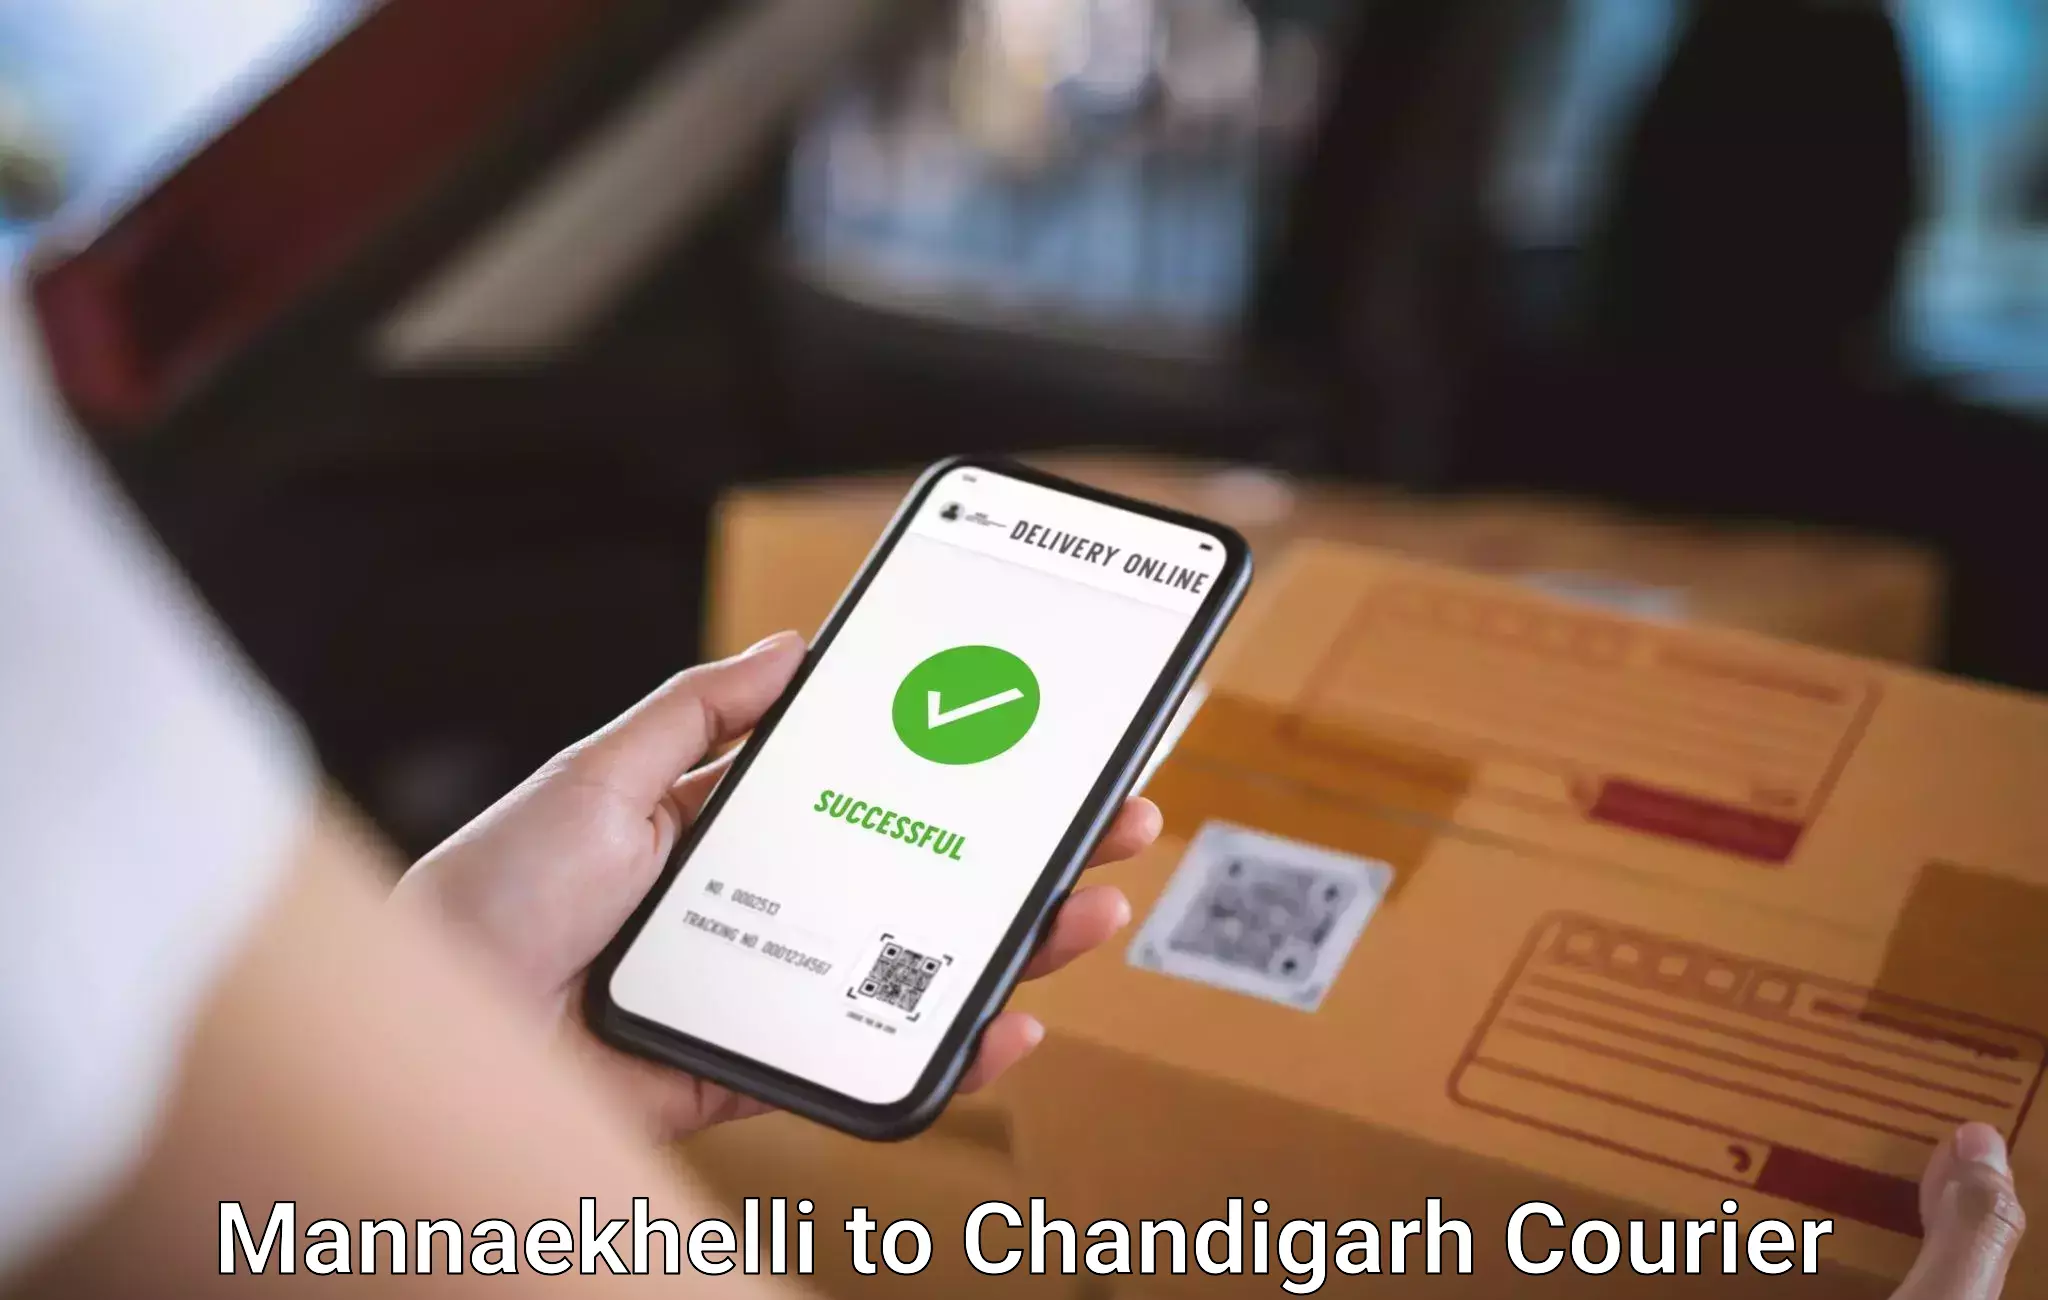 Luggage transit service Mannaekhelli to Chandigarh